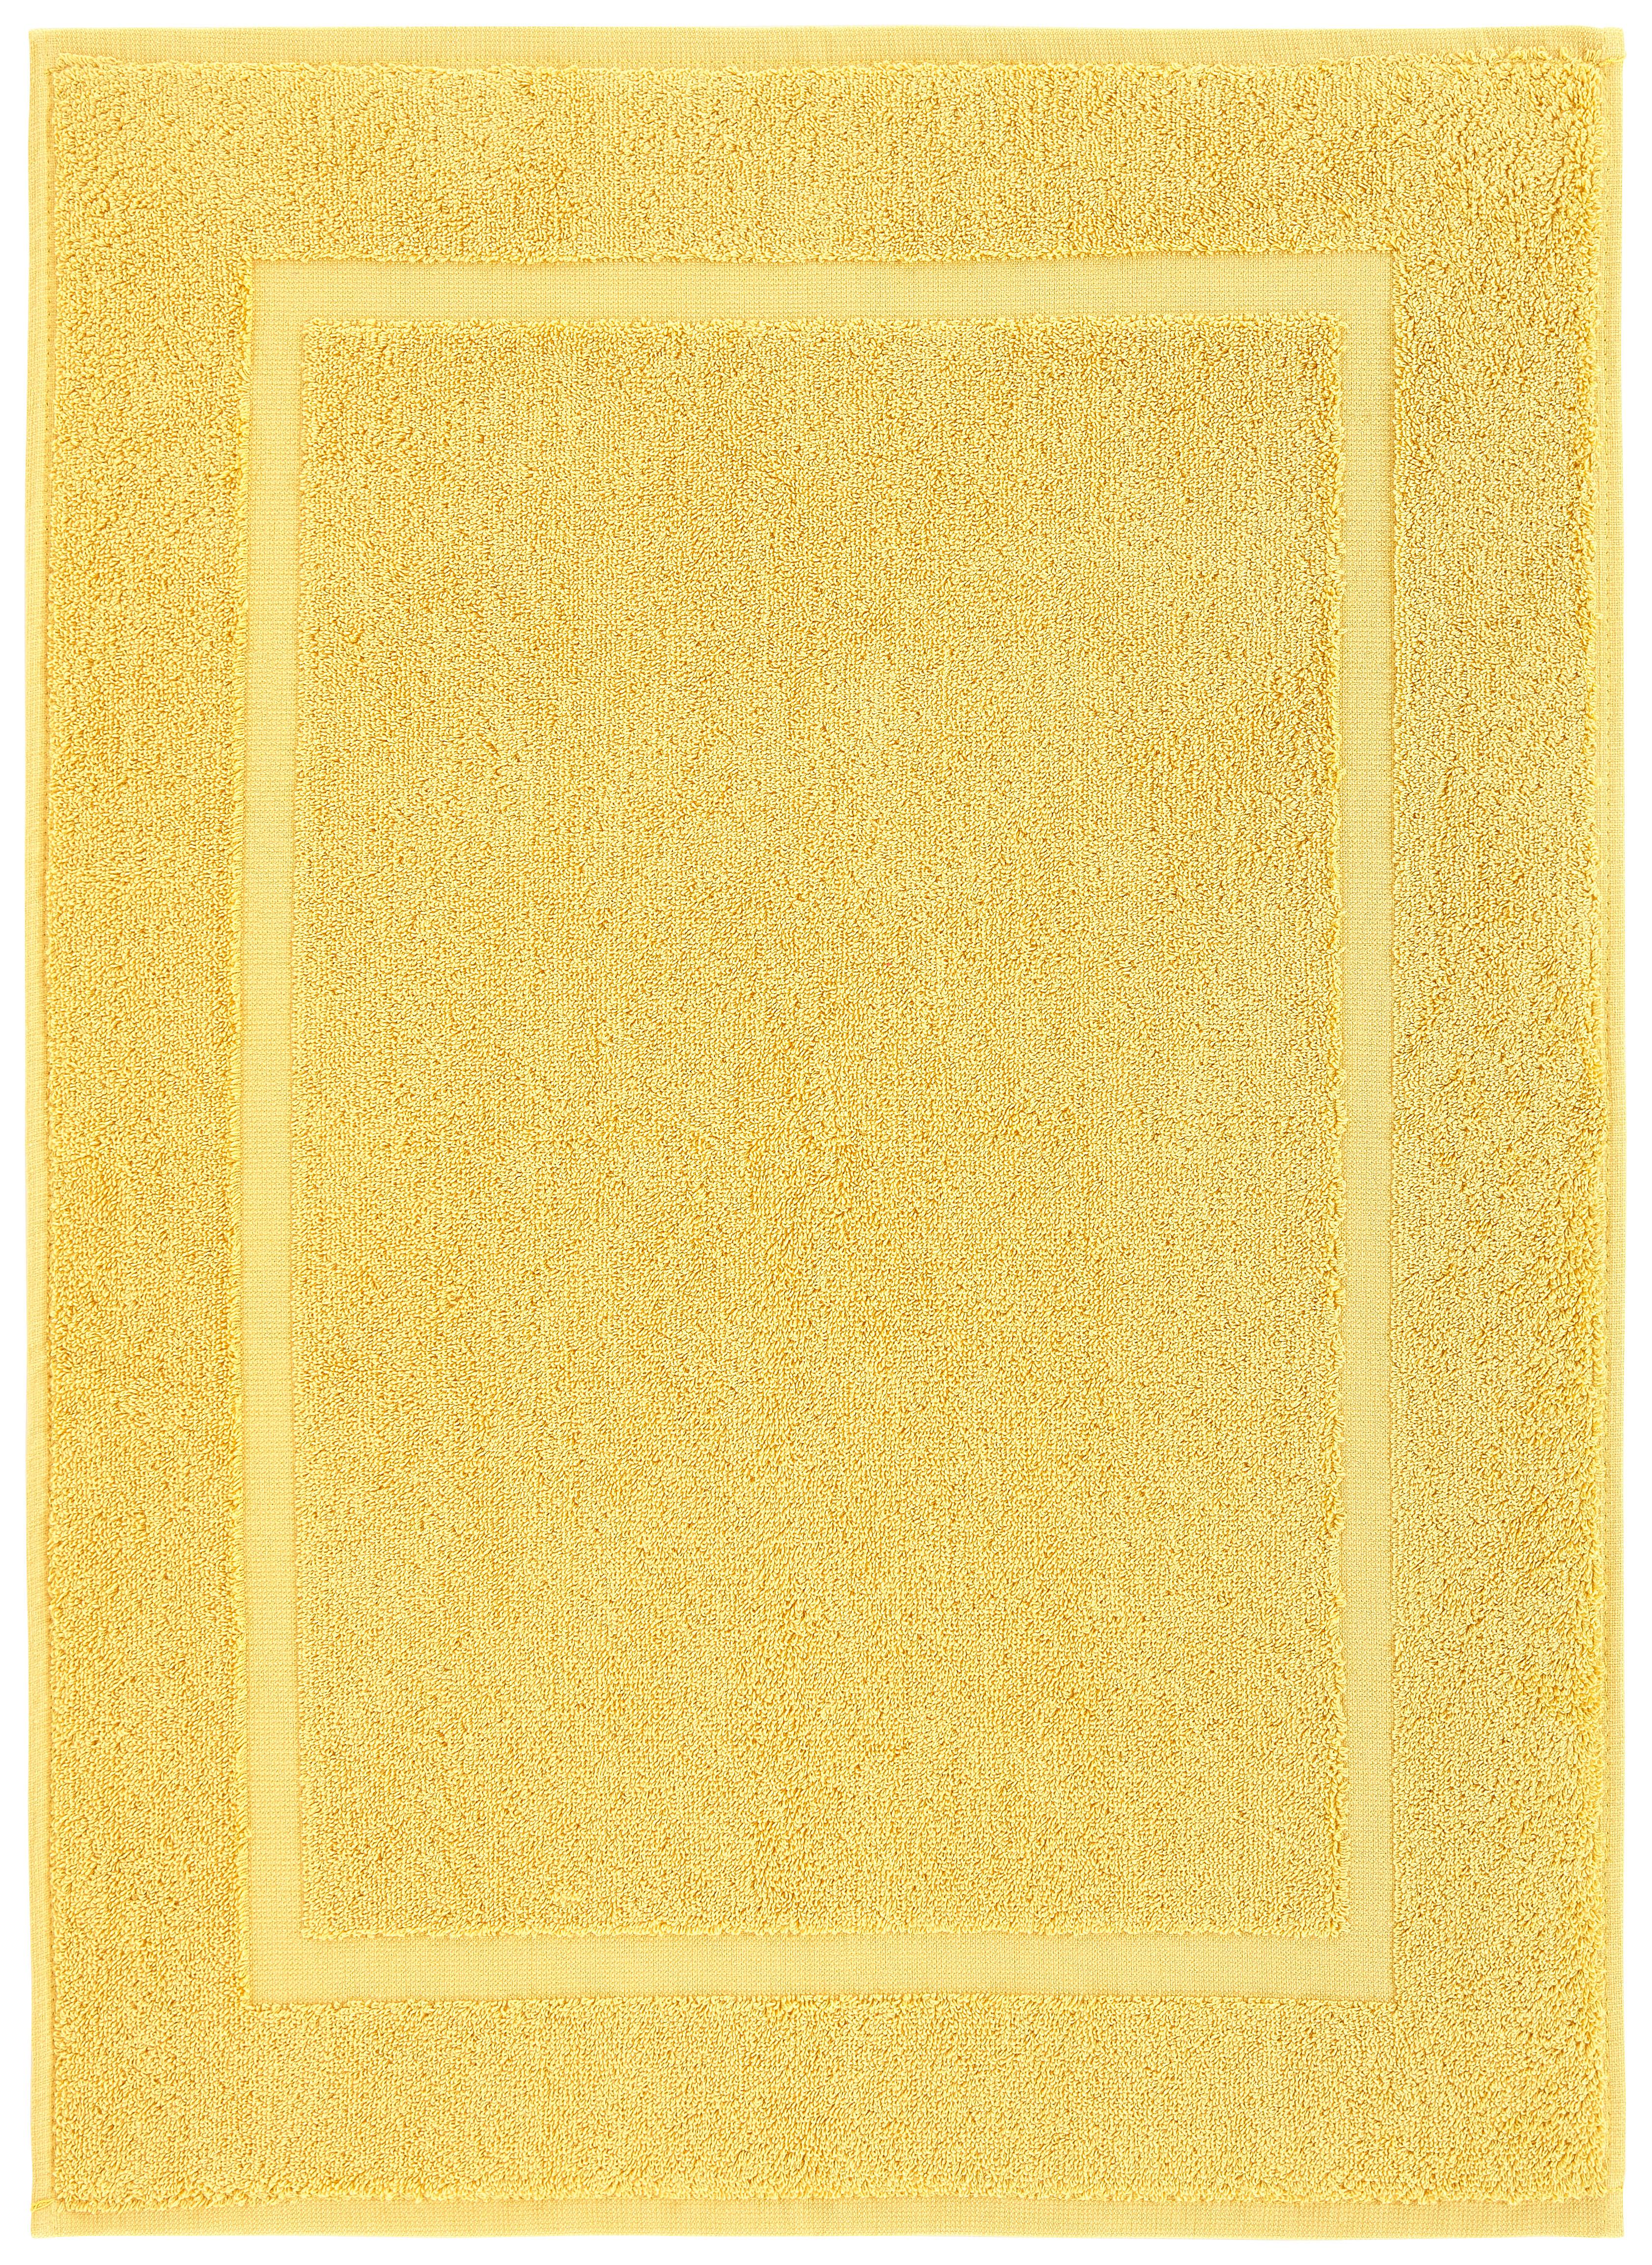 Badematte Melanie in Gelb ca. 50x70cm - Gelb, Textil (50/70cm) - Modern Living